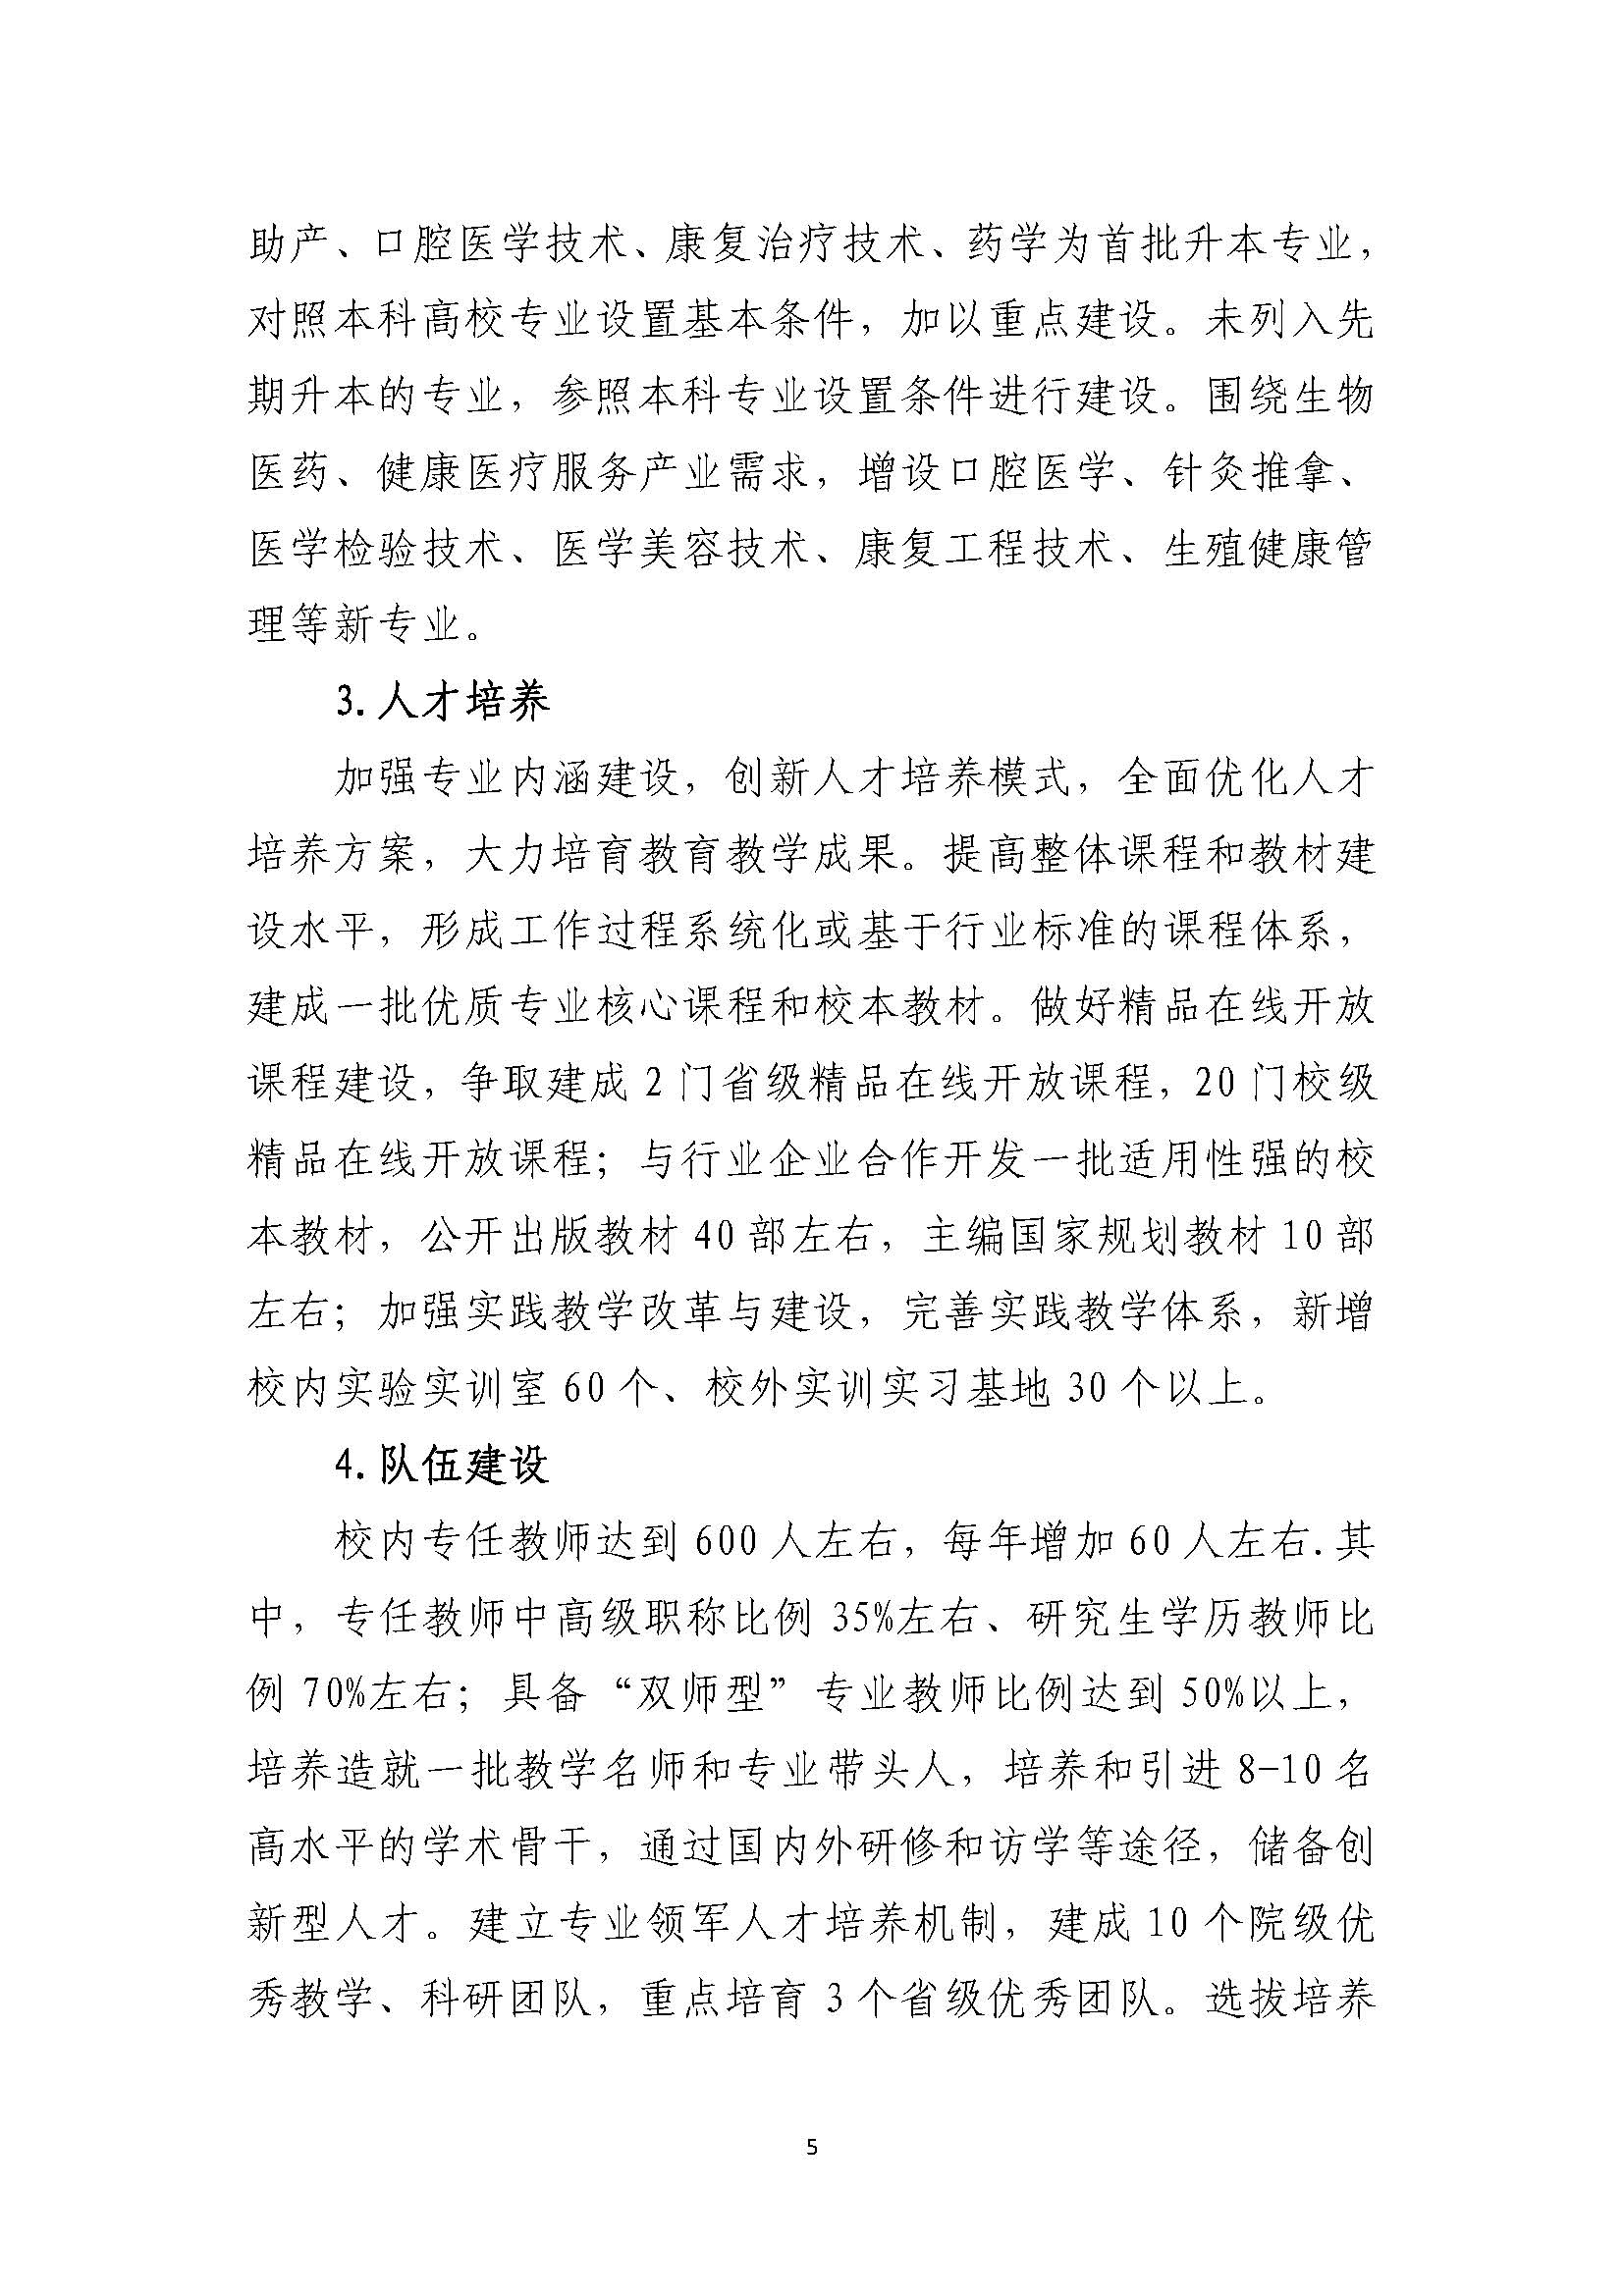 郑州黄河护理职业学院2021-2025年发展规划_页面_05.jpg